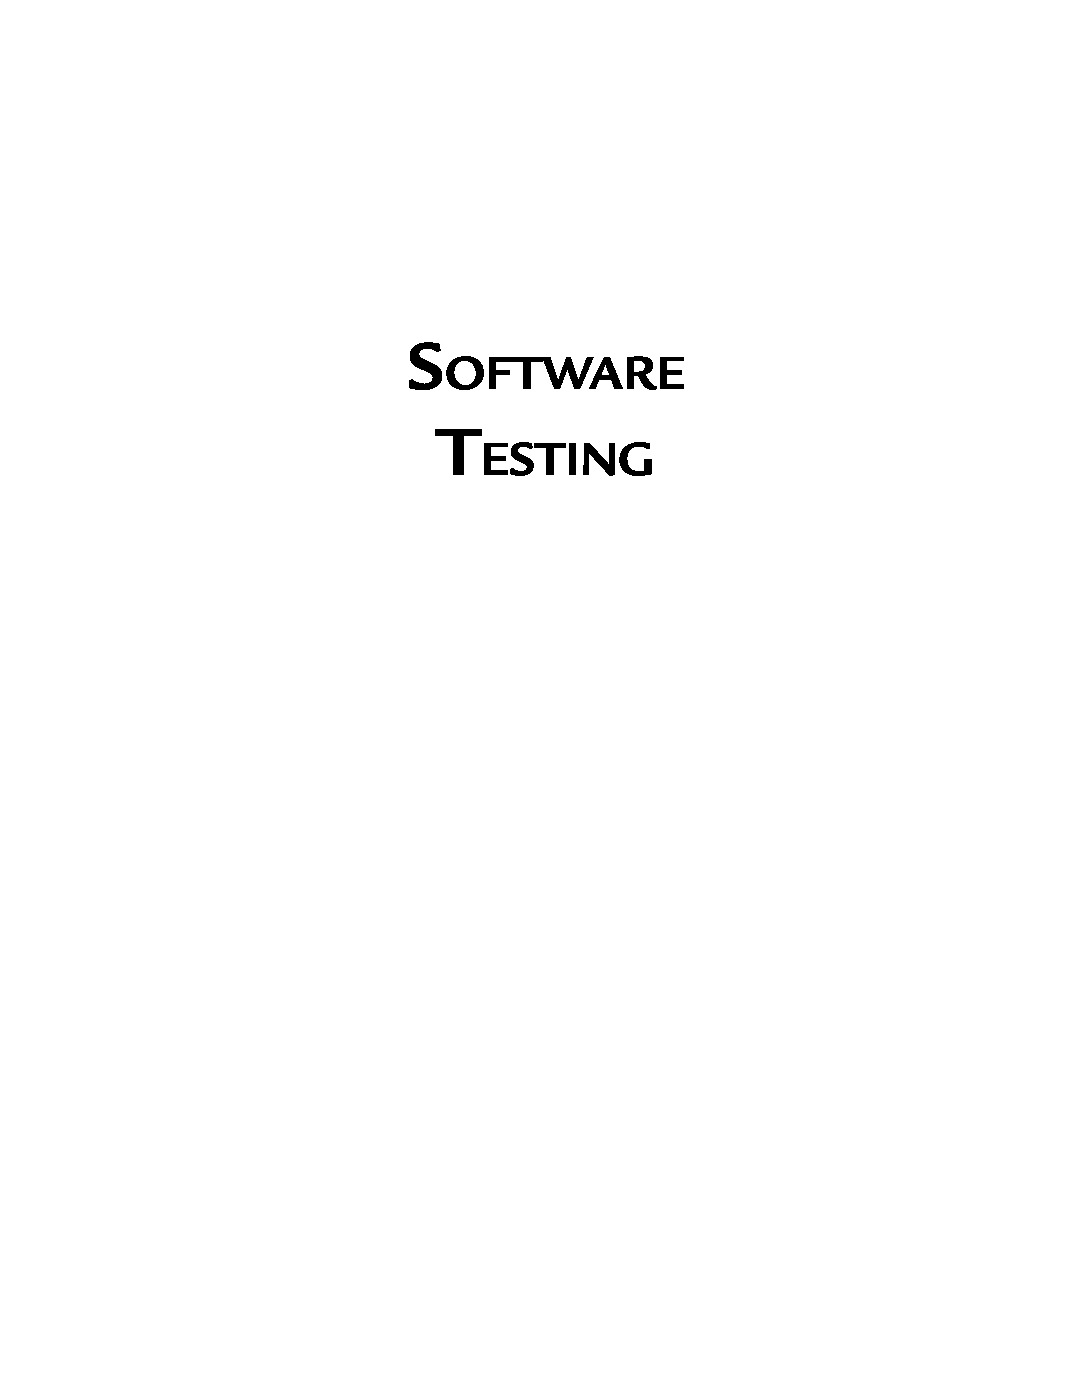 softwaretestingprinciplesandpractices